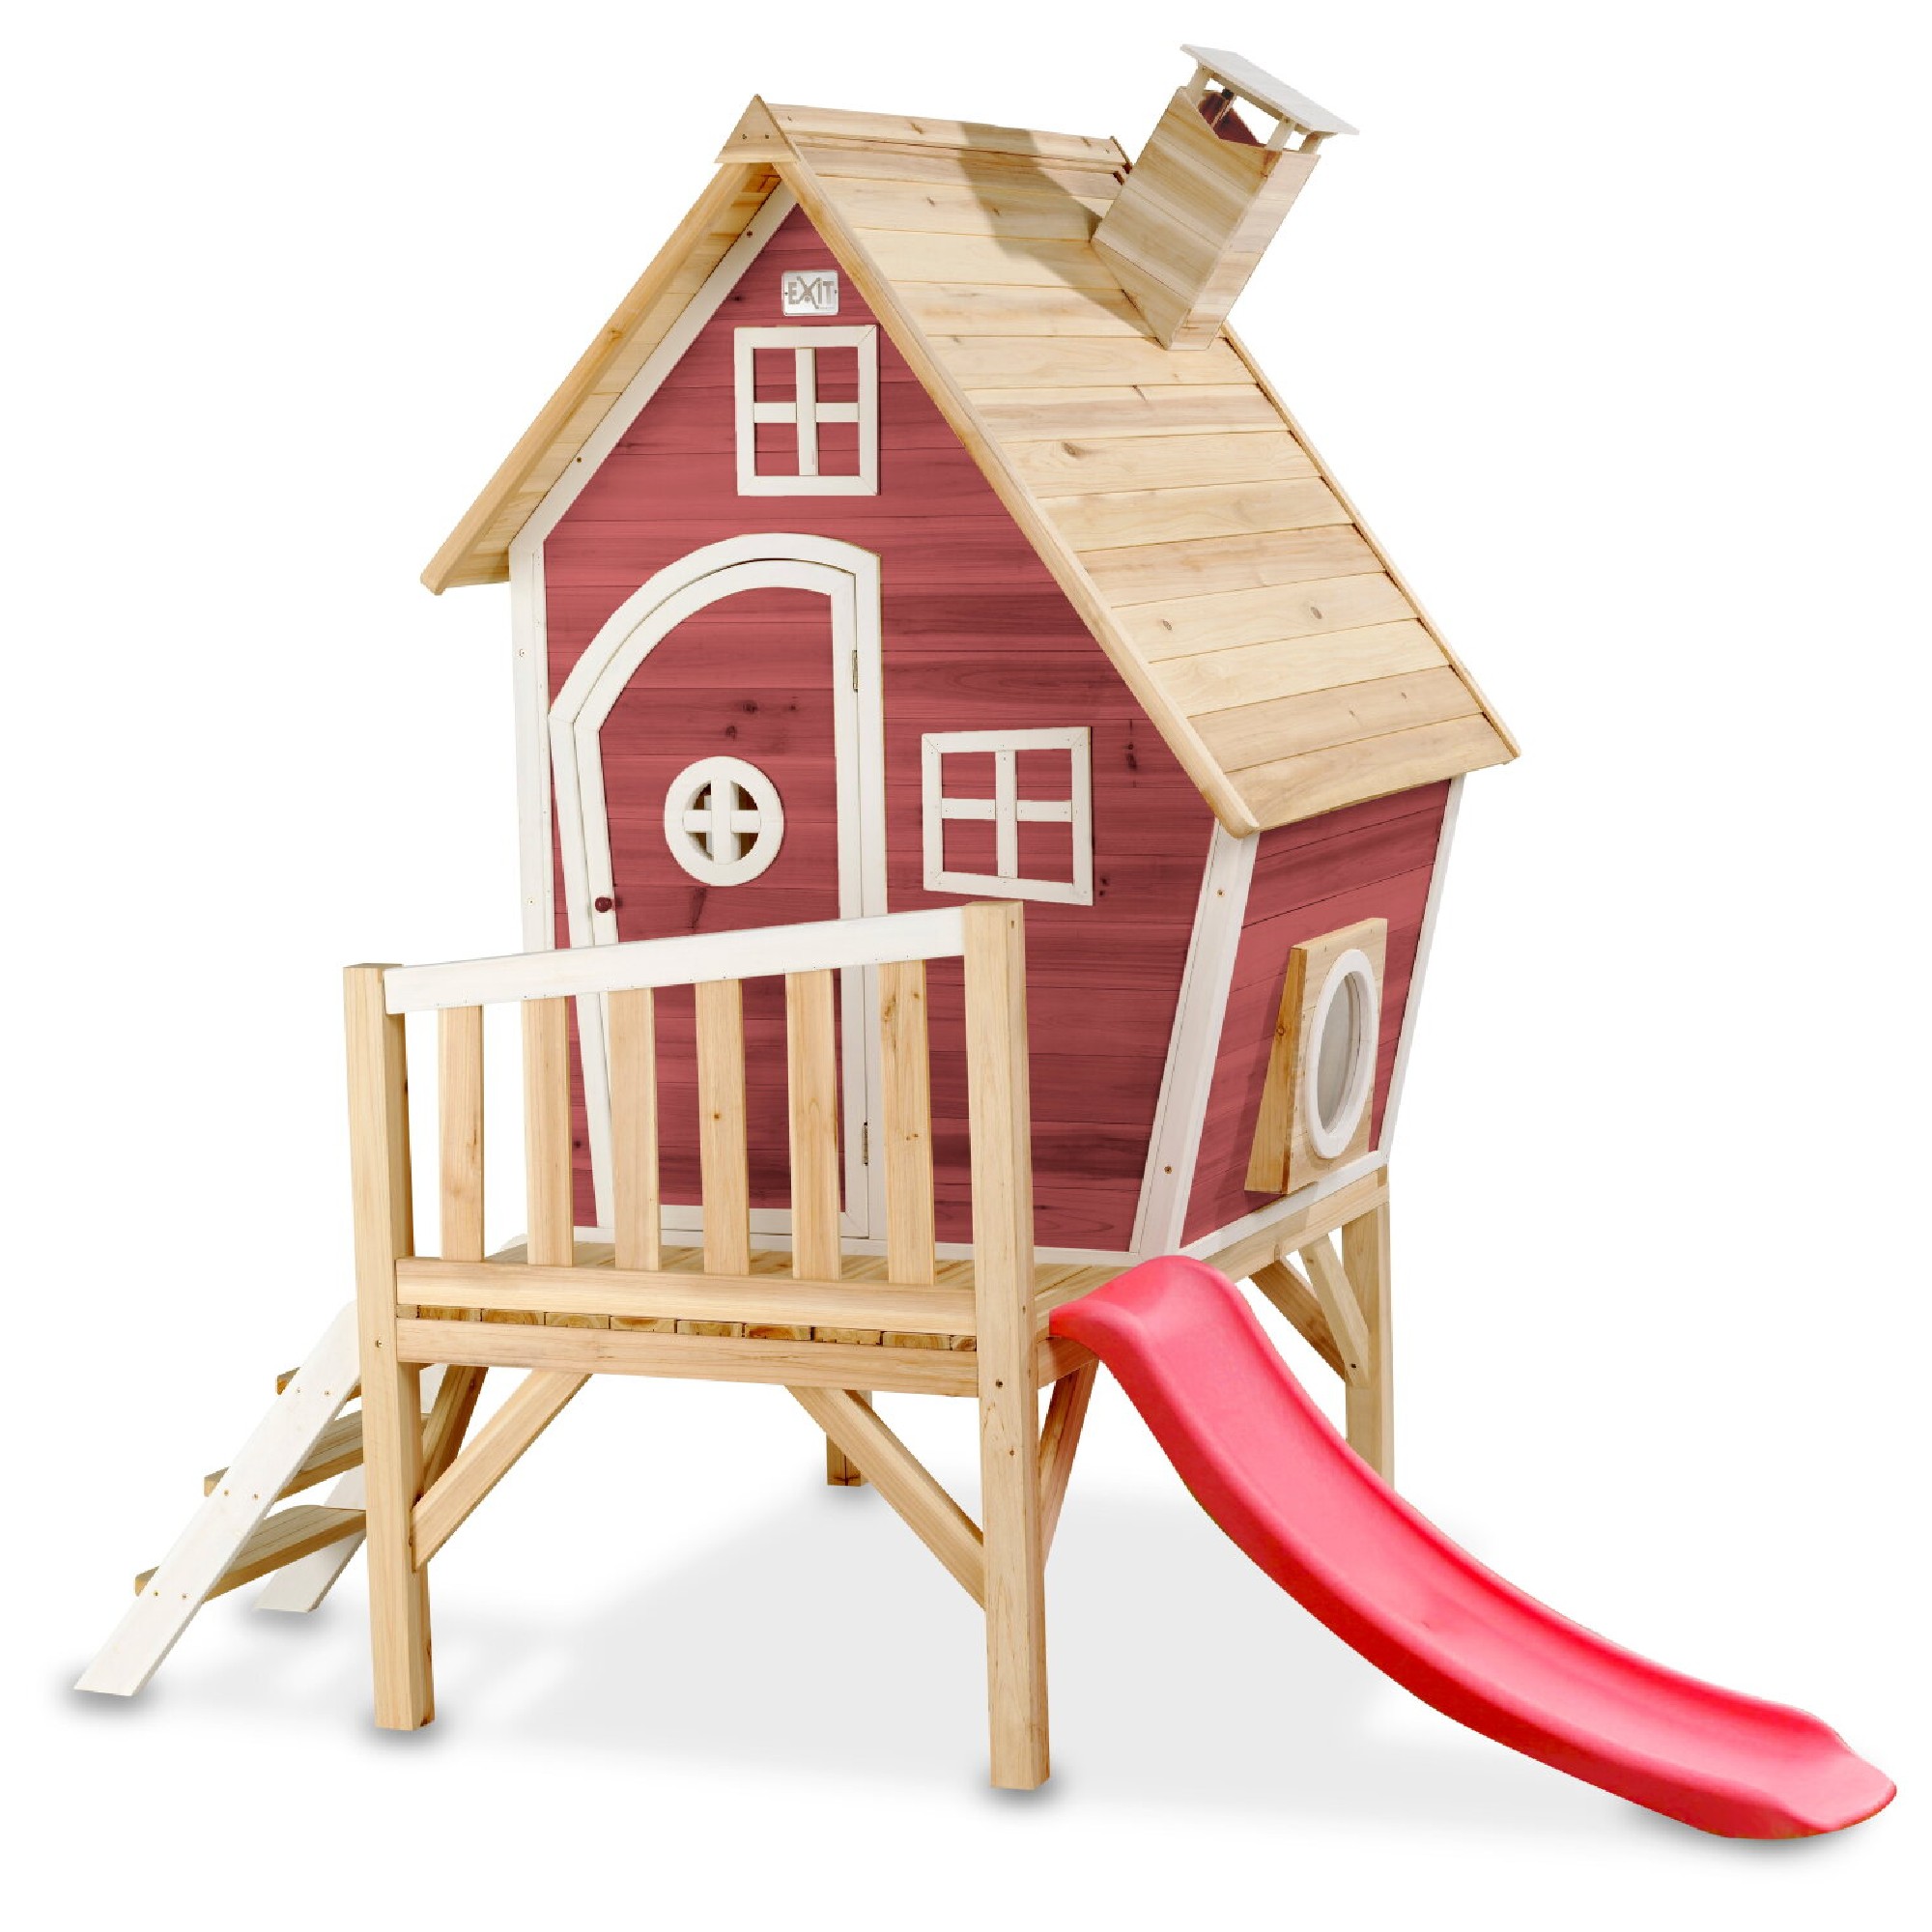 Drewniany domek ogrodowy dla dzieci ze zjedalni, werand i schodkami Fantasia 300 czerwony